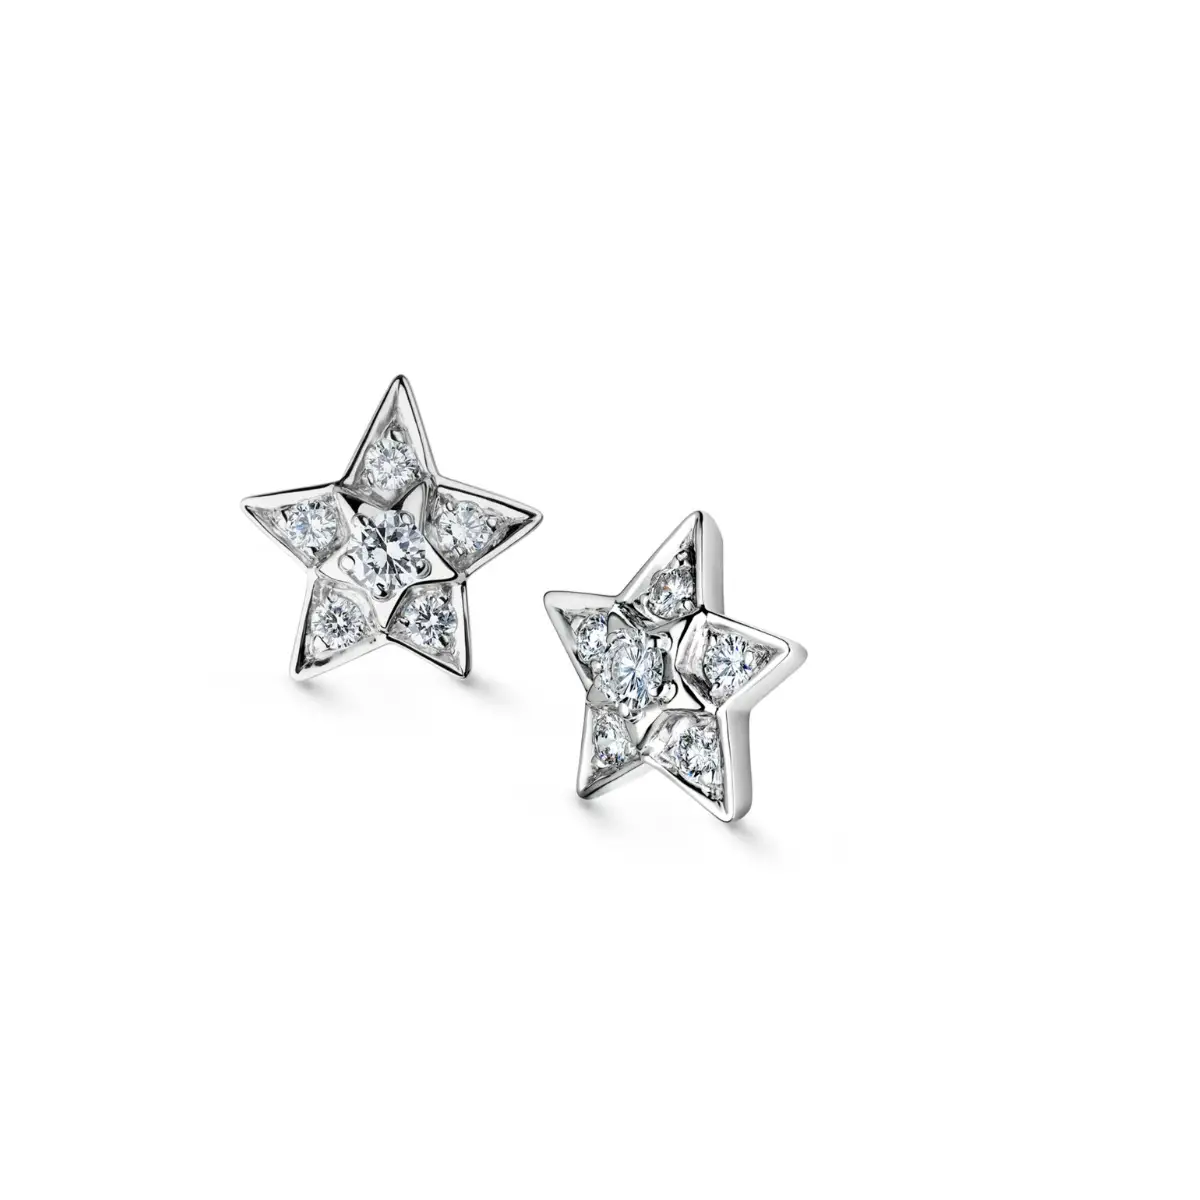 Queen Letizia of Spain wore Chanel 'Comete'diamond earrings